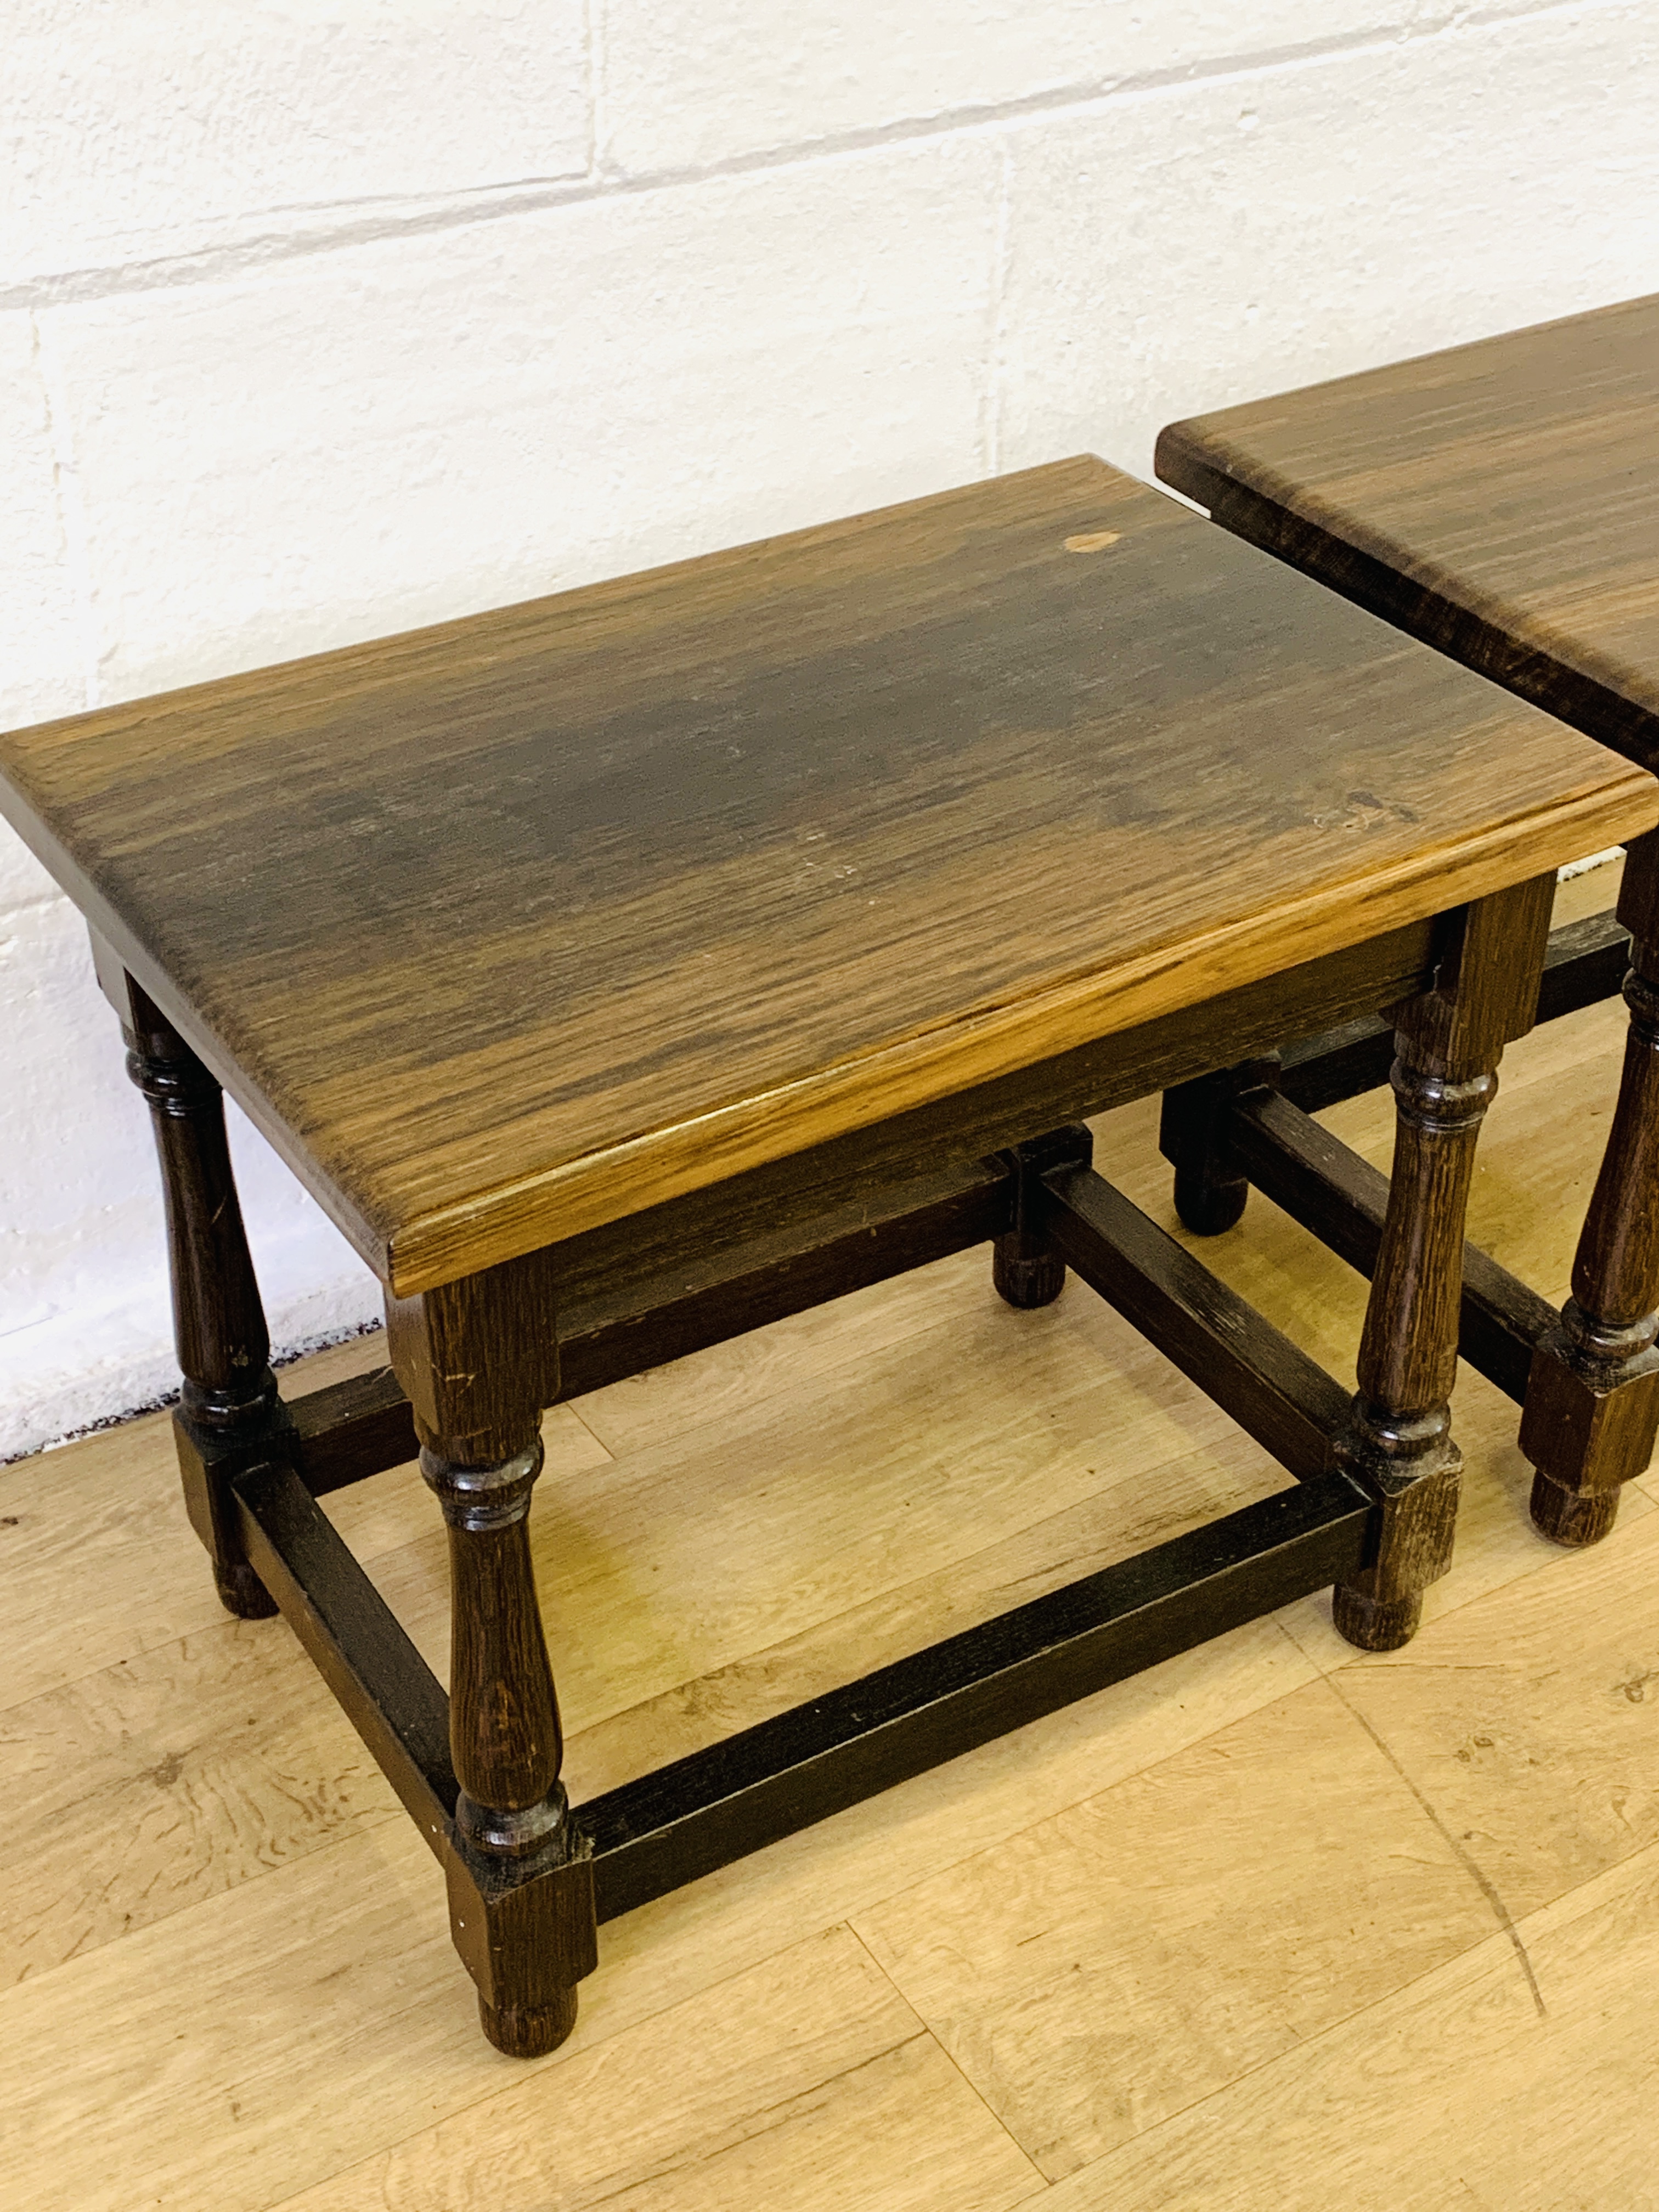 Two bog oak side tables - Image 3 of 4